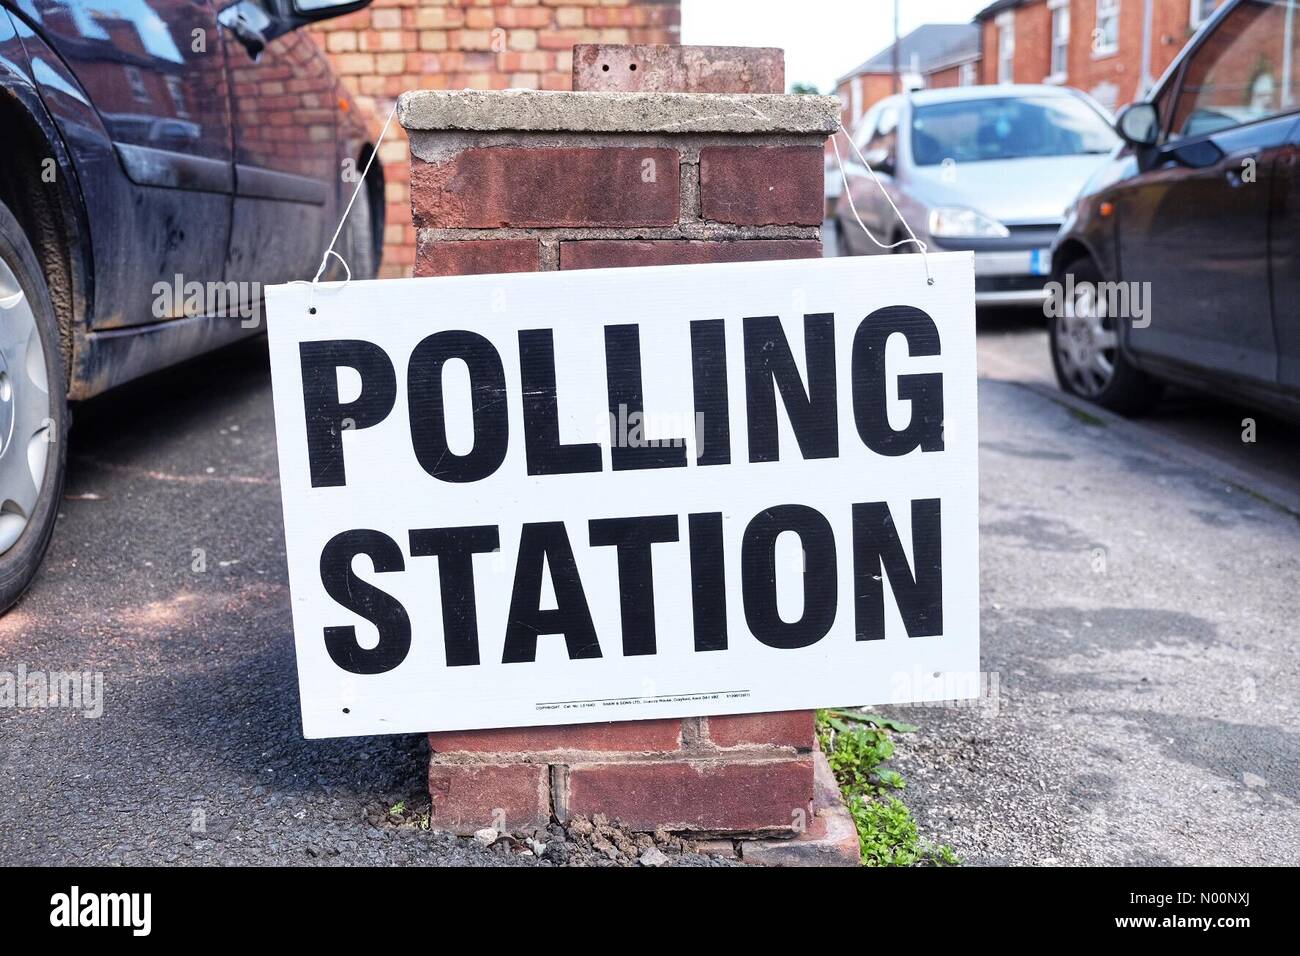 Elezioni locali UK - Worcester, Regno Unito - giovedì 3 maggio 2018 - elezioni locali oggi per Worcester City Council per un terzo dei seggi del Consiglio. I seggi elettorali sono aperti in tutta la città. Foto Stock